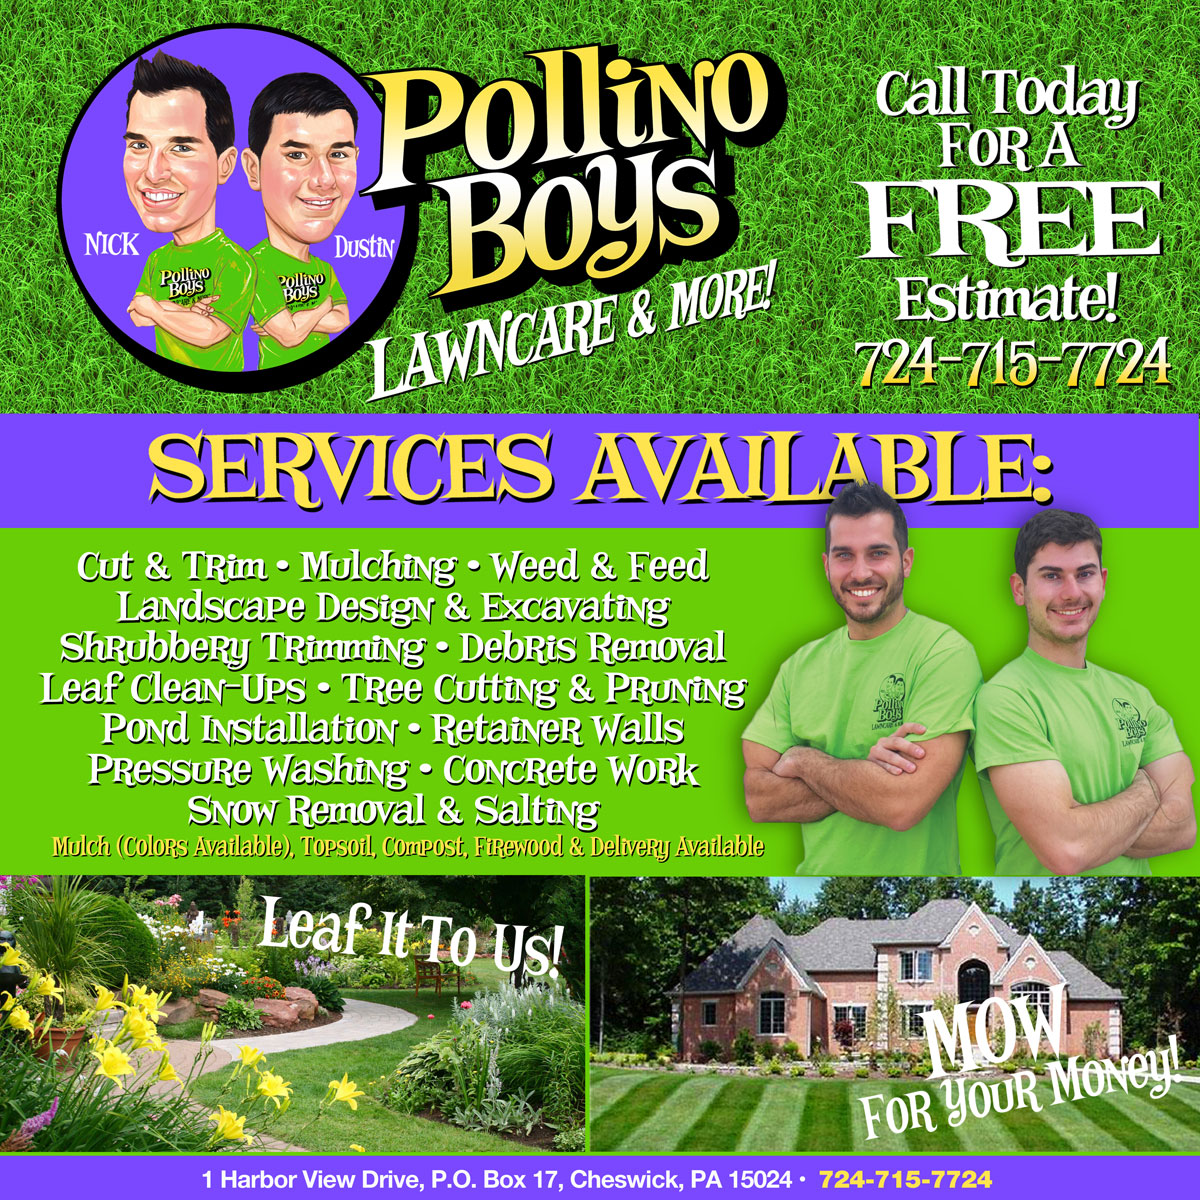 Pollino Boys - Lawncare & More!